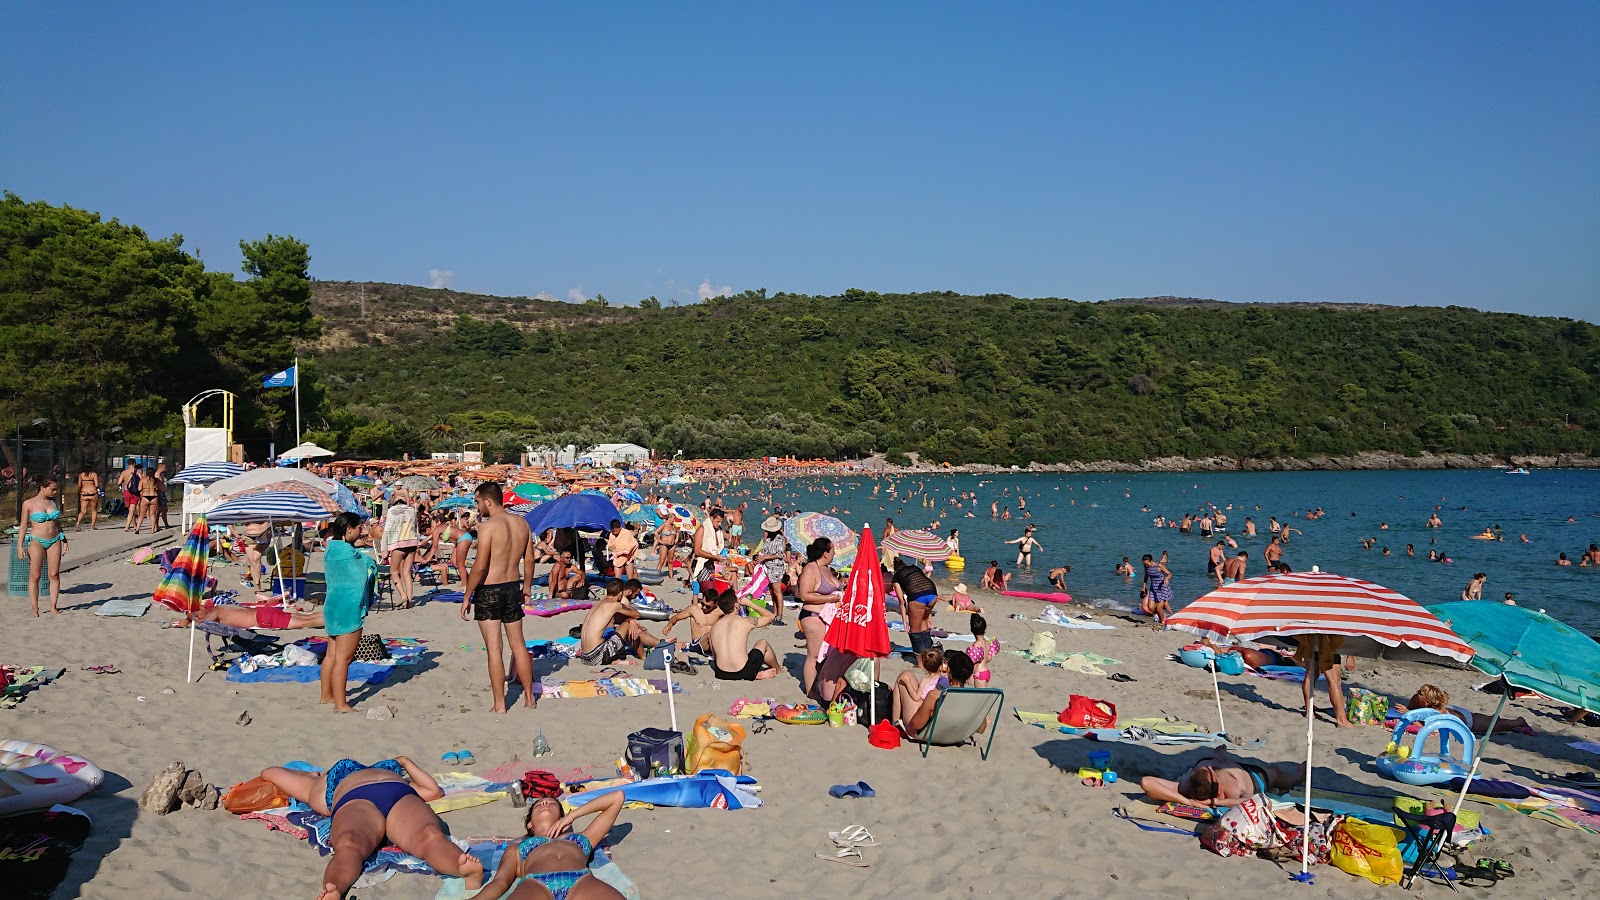 Zdjęcie Plazh Przhno - popularne miejsce wśród znawców relaksu